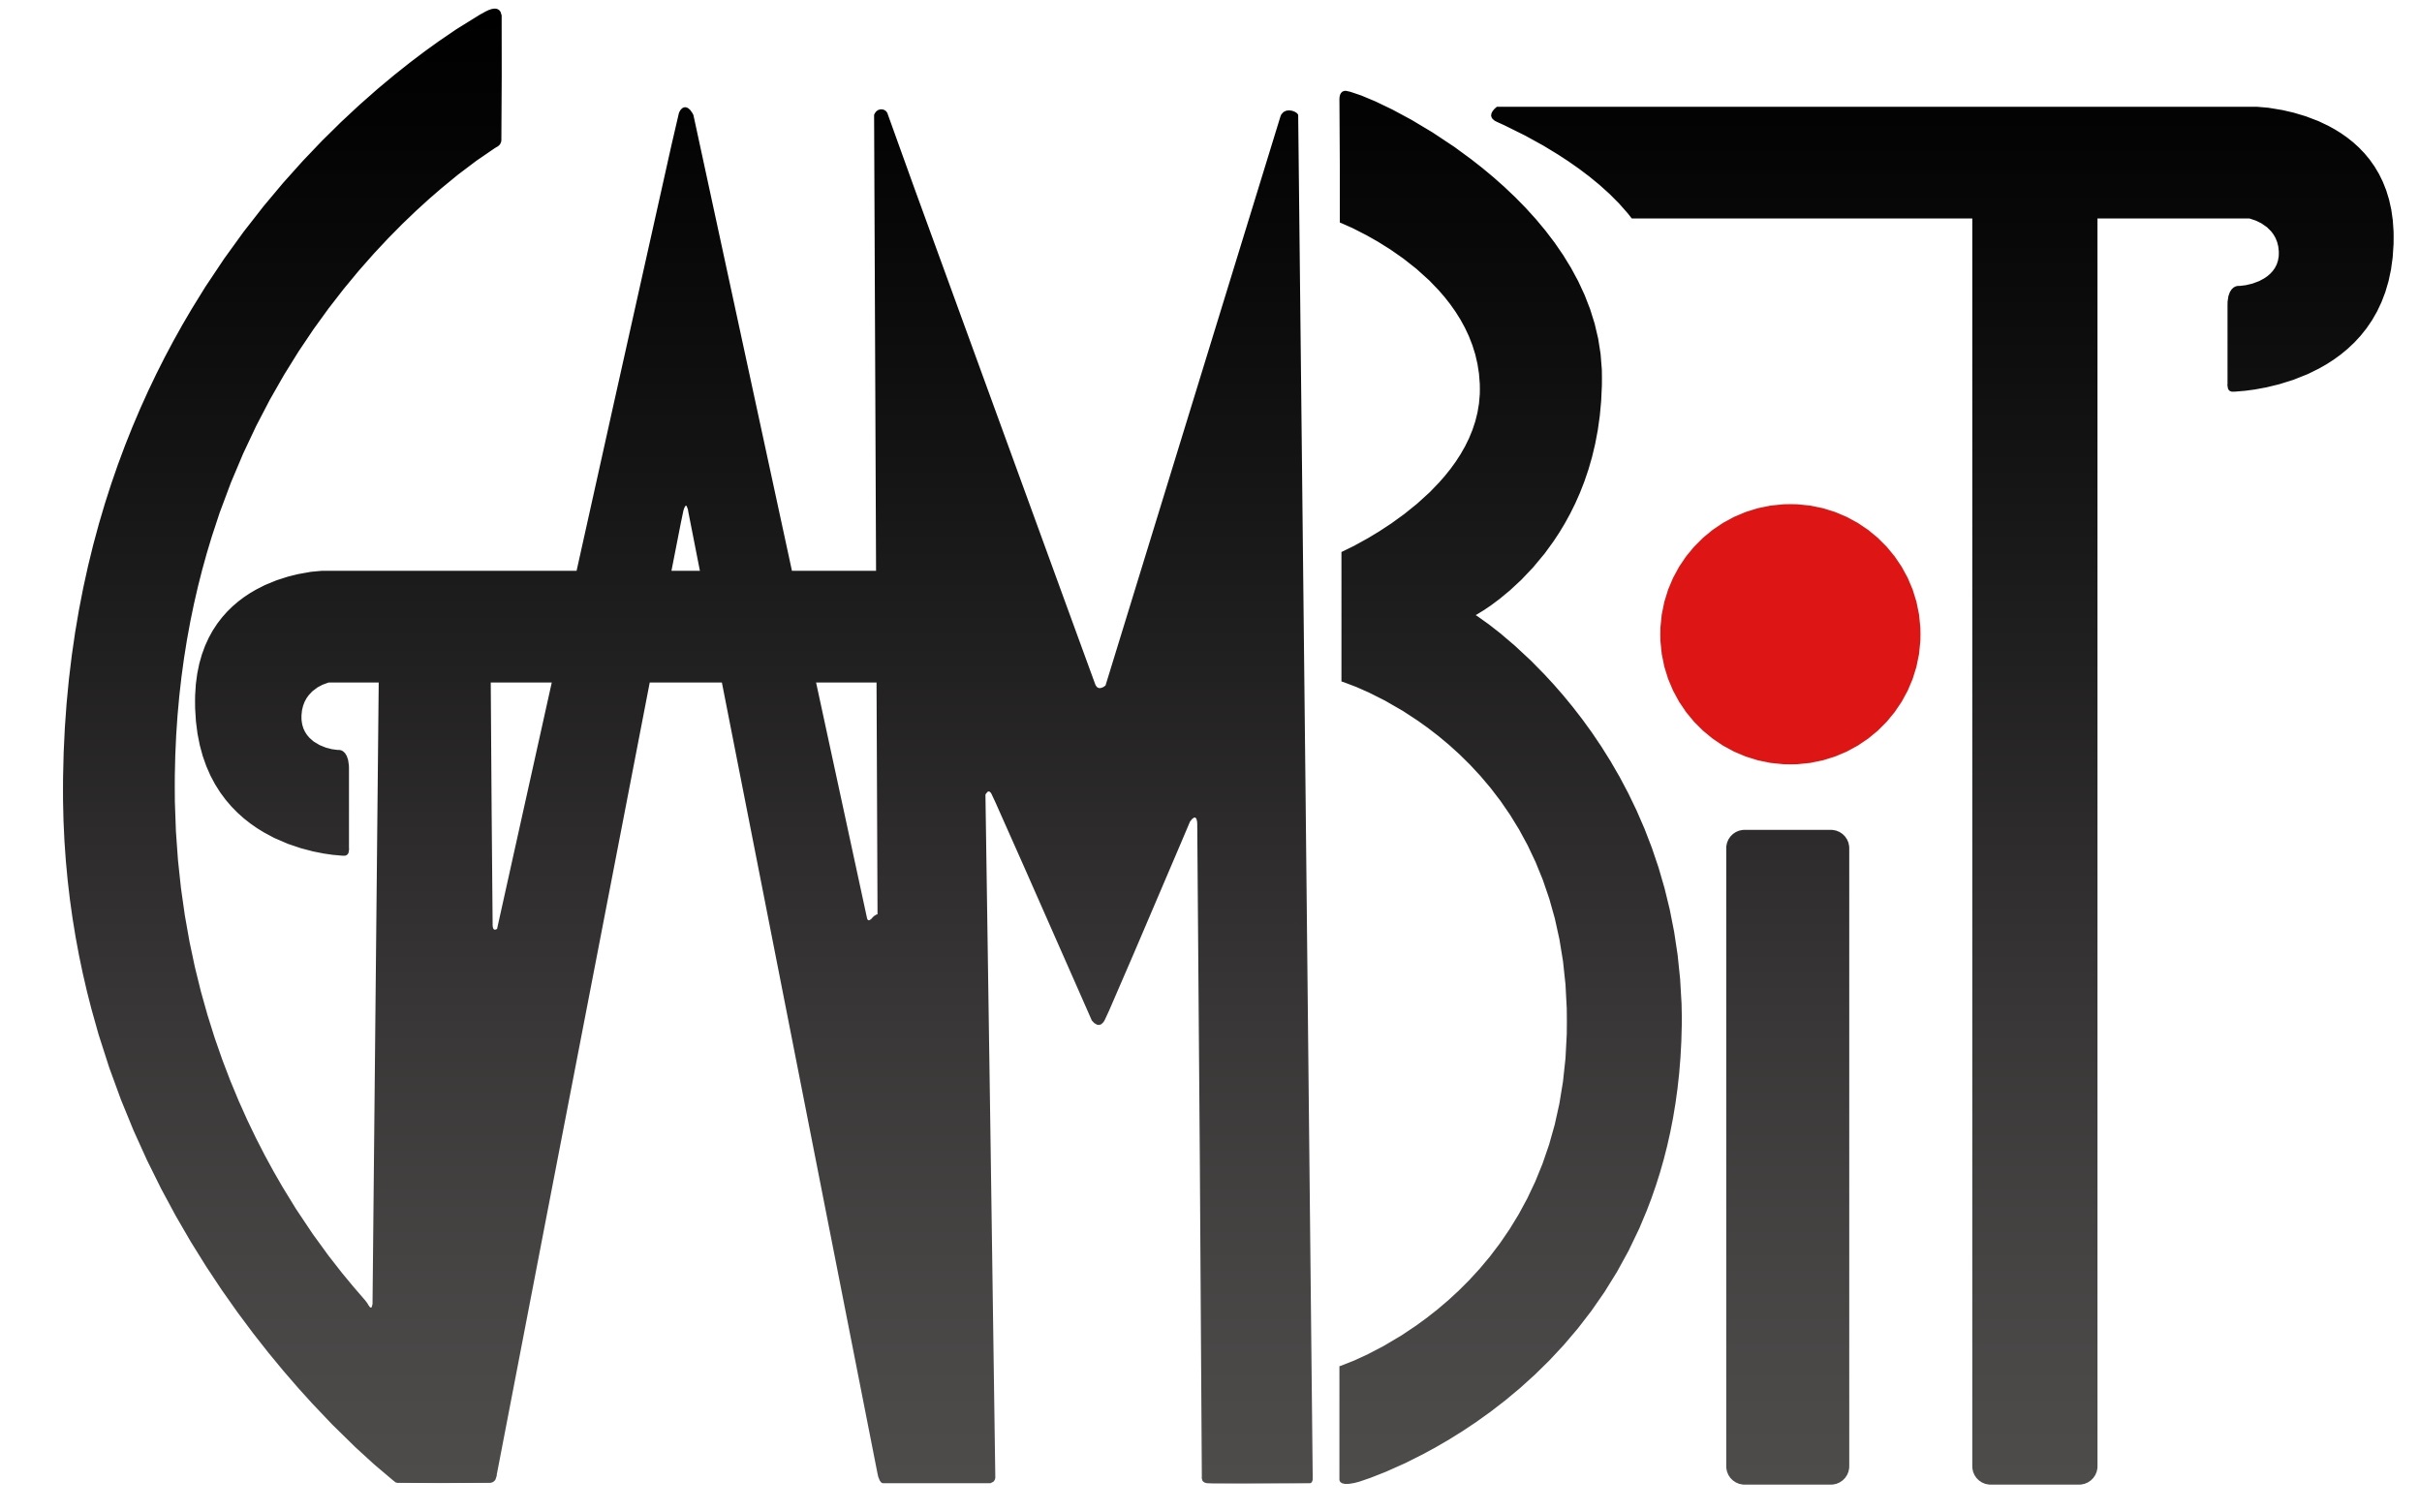 GAMBIT Logo.jpg b8d3e07d210c9145cefb5ce0f773466a